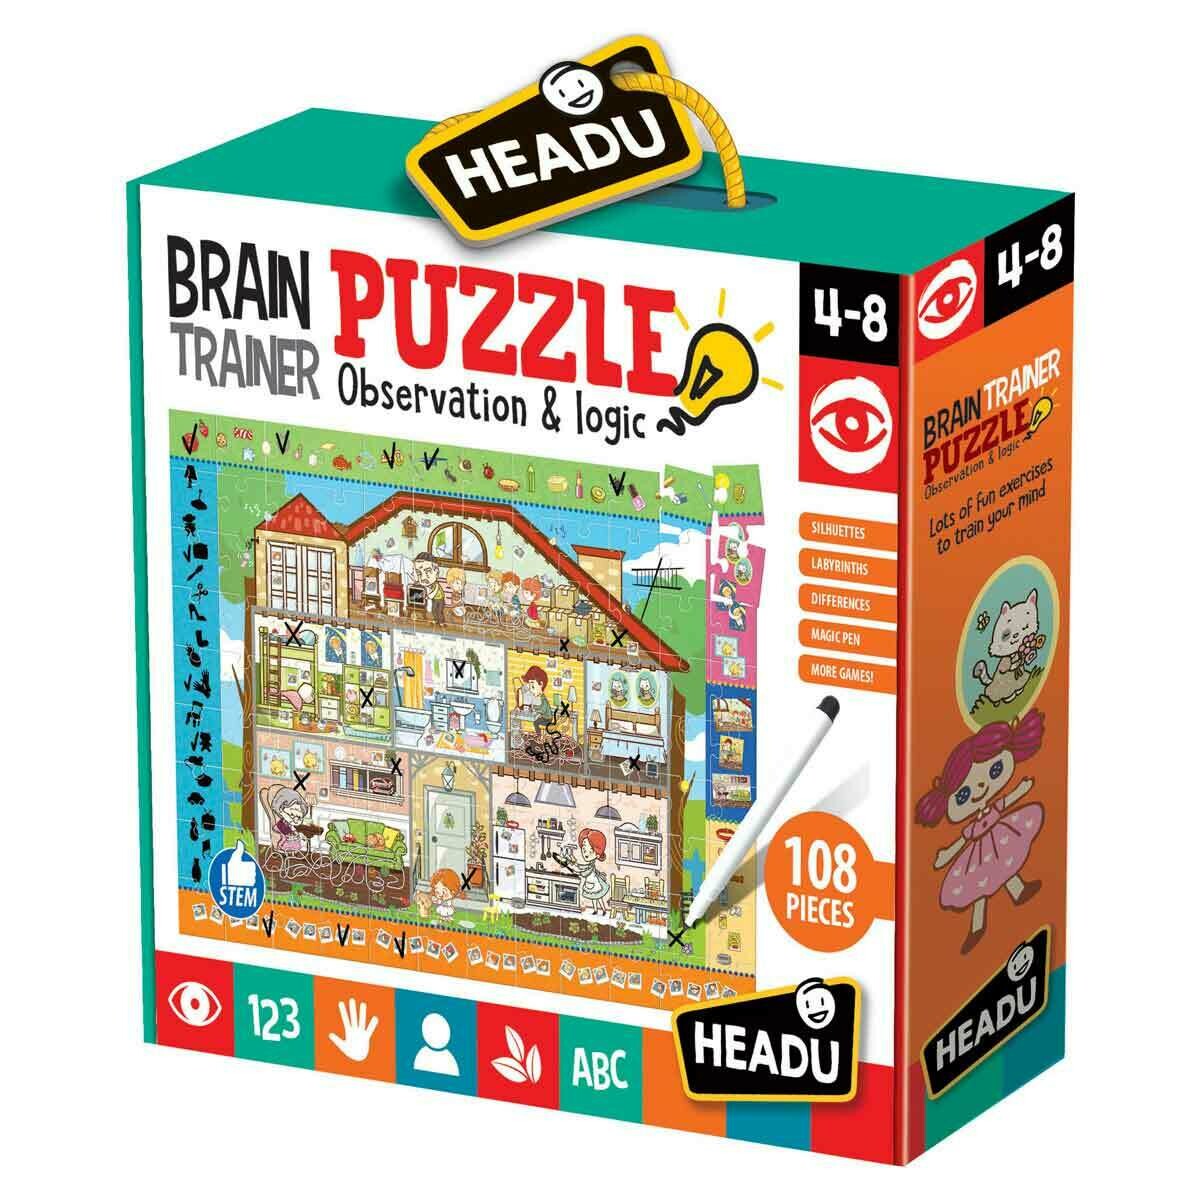 Headu - Brain Trainer Puzzle